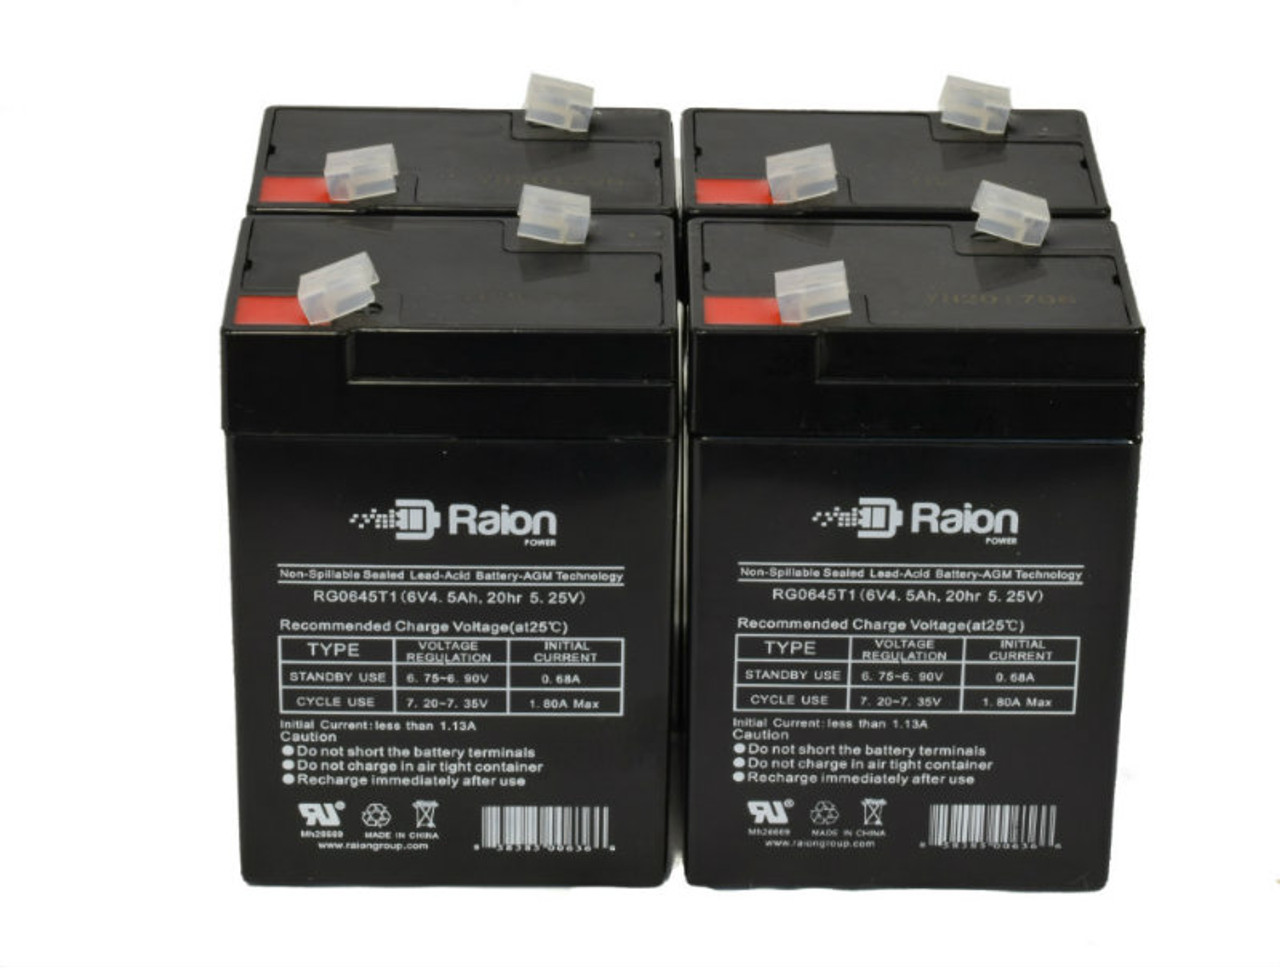 Raion Power 6V 4.5Ah Replacement Emergency Light Battery for Light E8 - 4 Pack